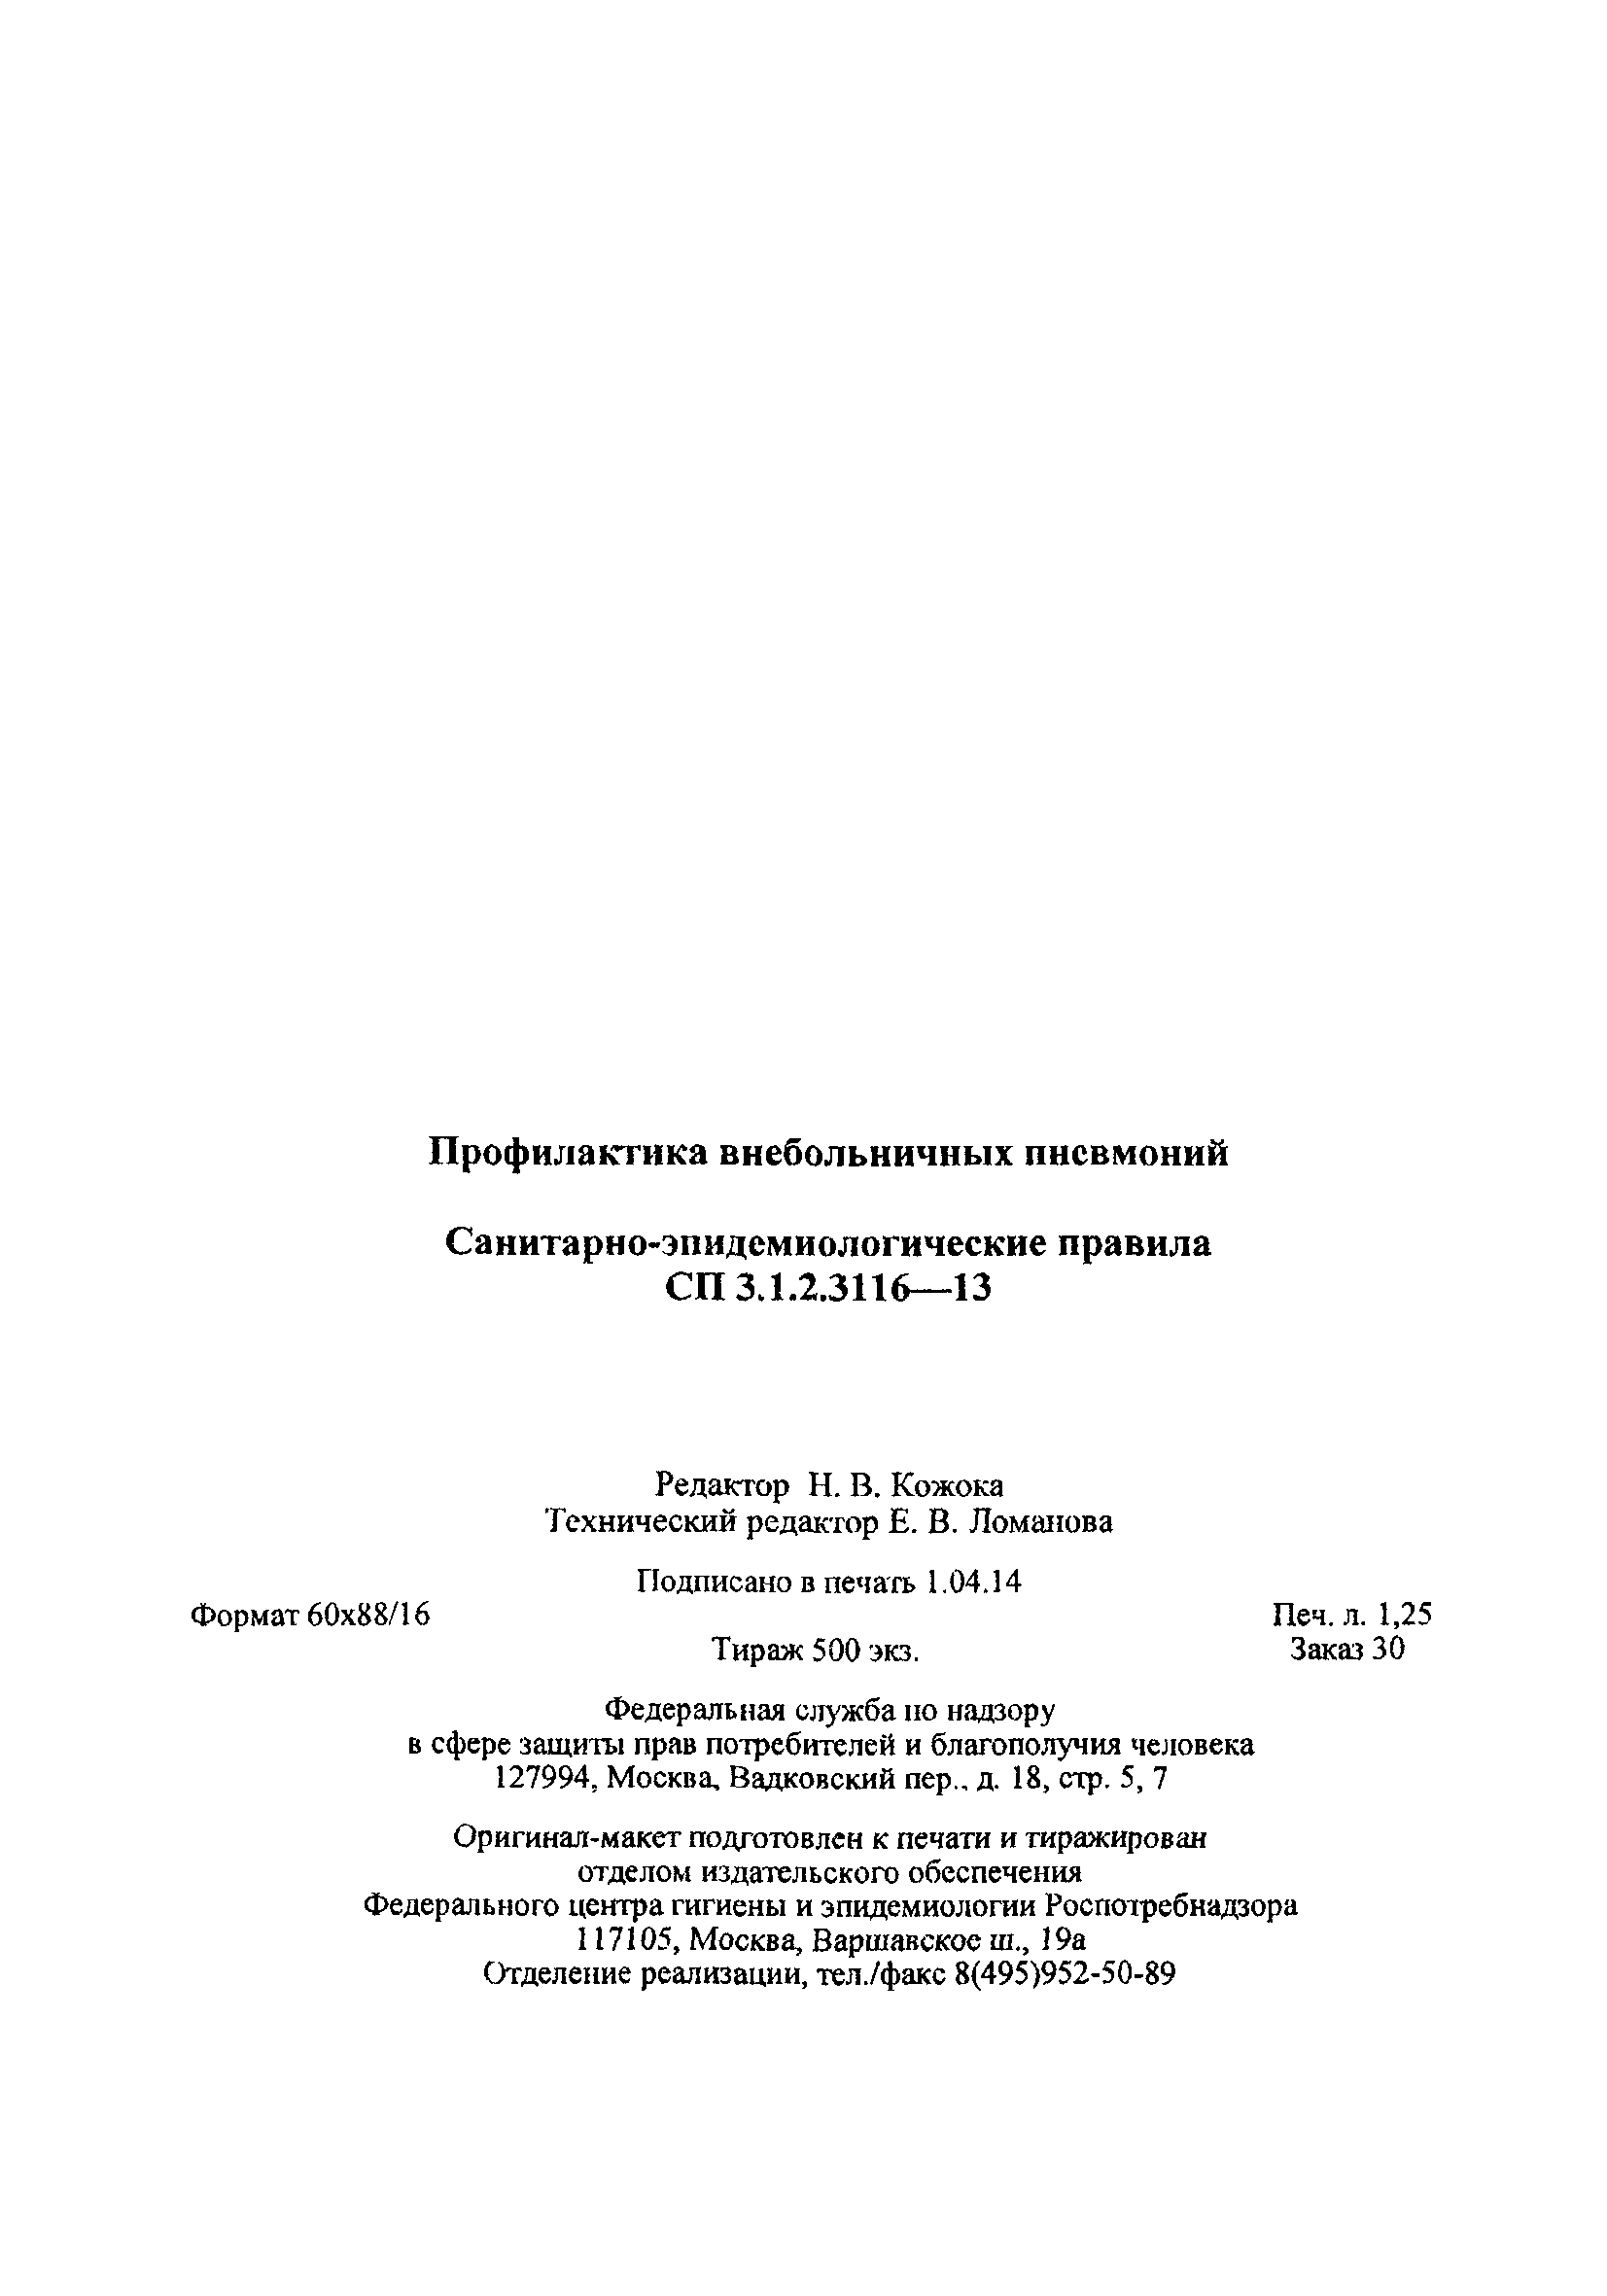 СП 3.1.2.3116-13